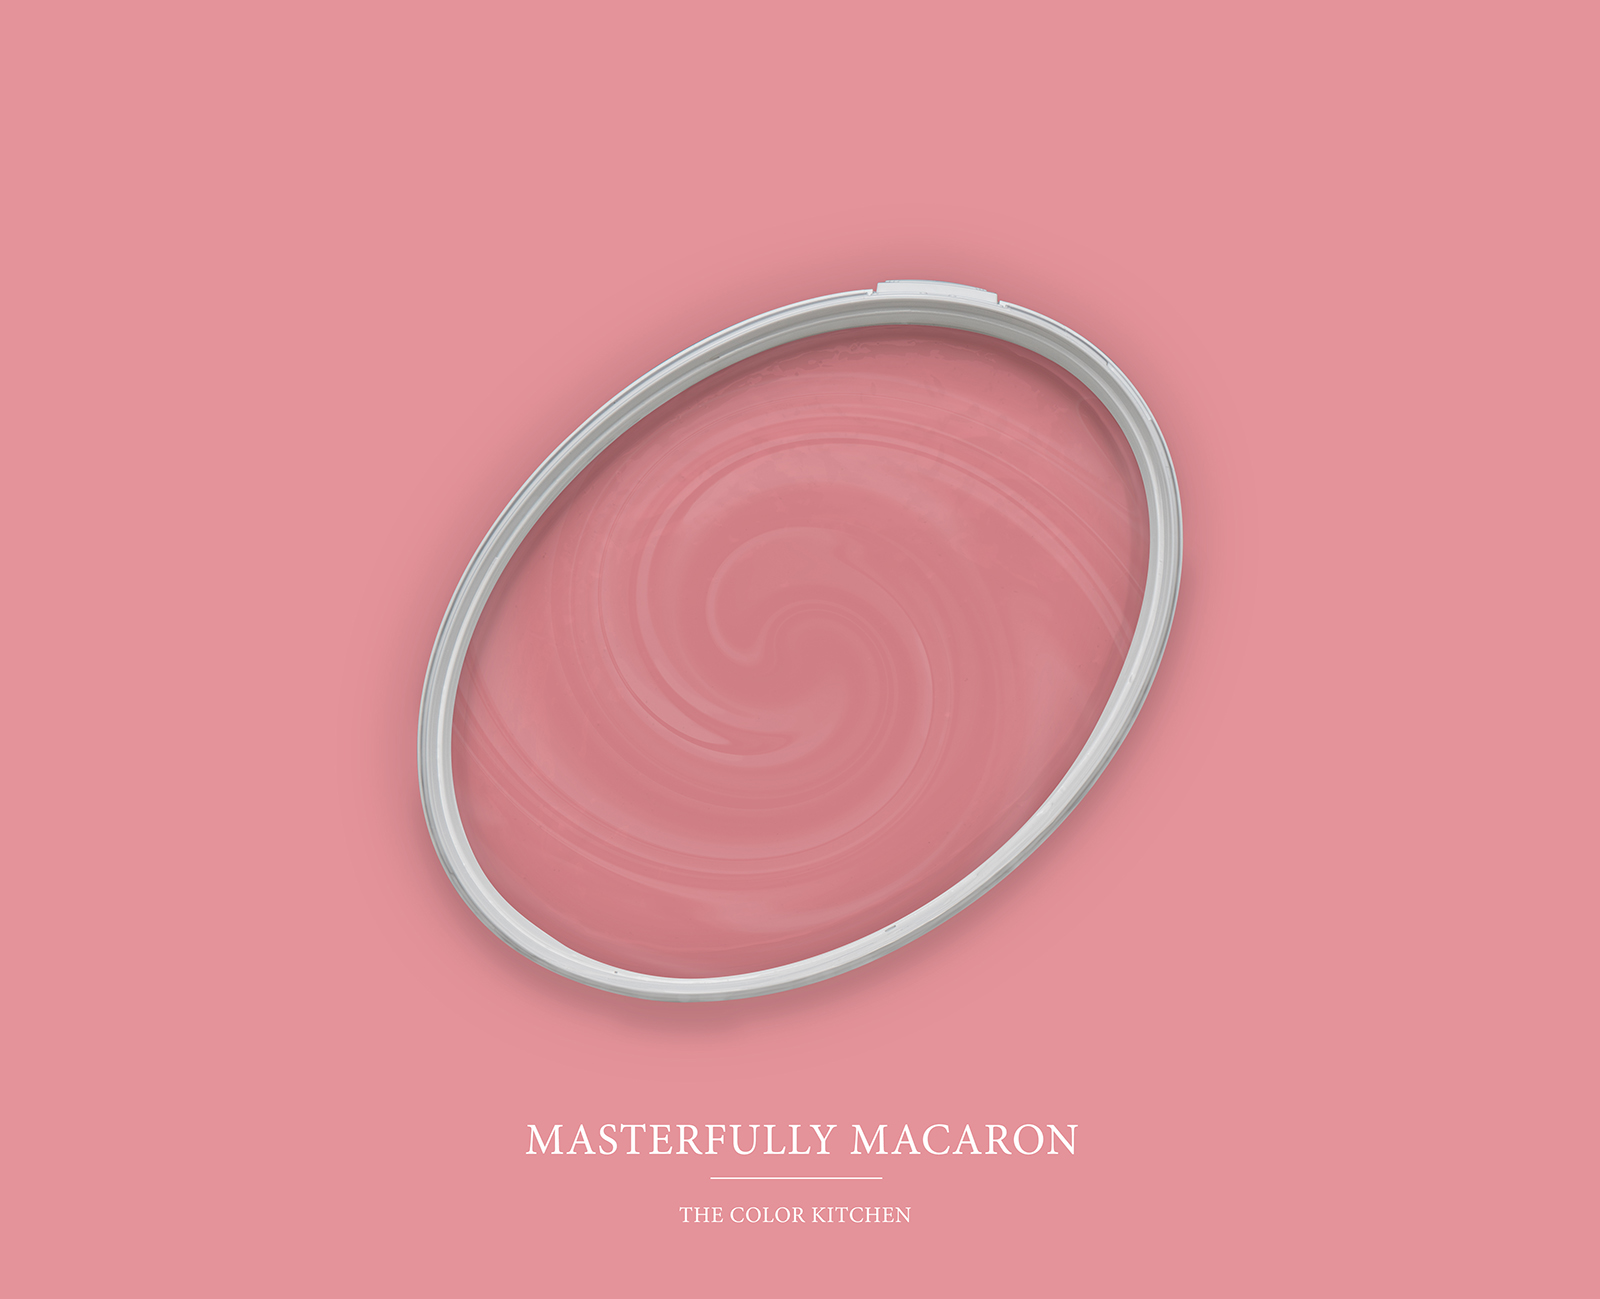         Wandfarbe TCK7010 »Masterfully Macaron« in lebendigem Pink – 2,5 Liter
    